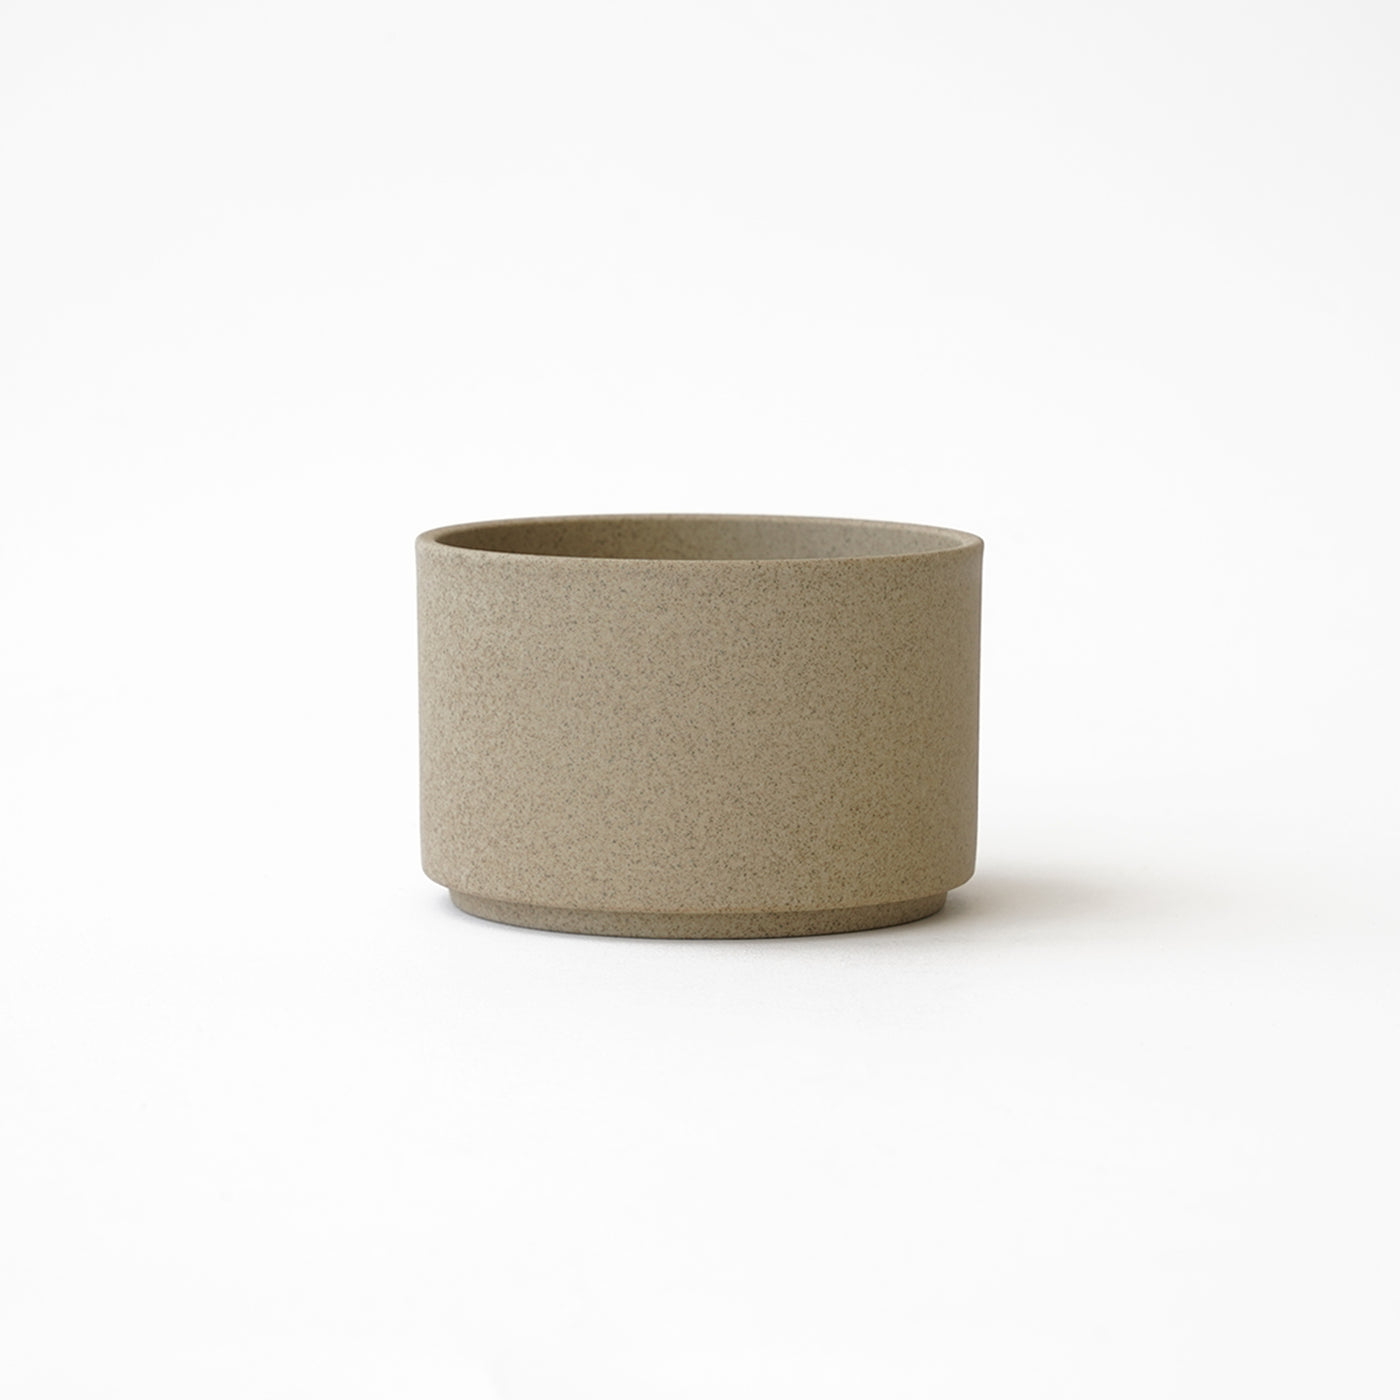 Hasami Porcelain Bowl 3 3/8" Natural